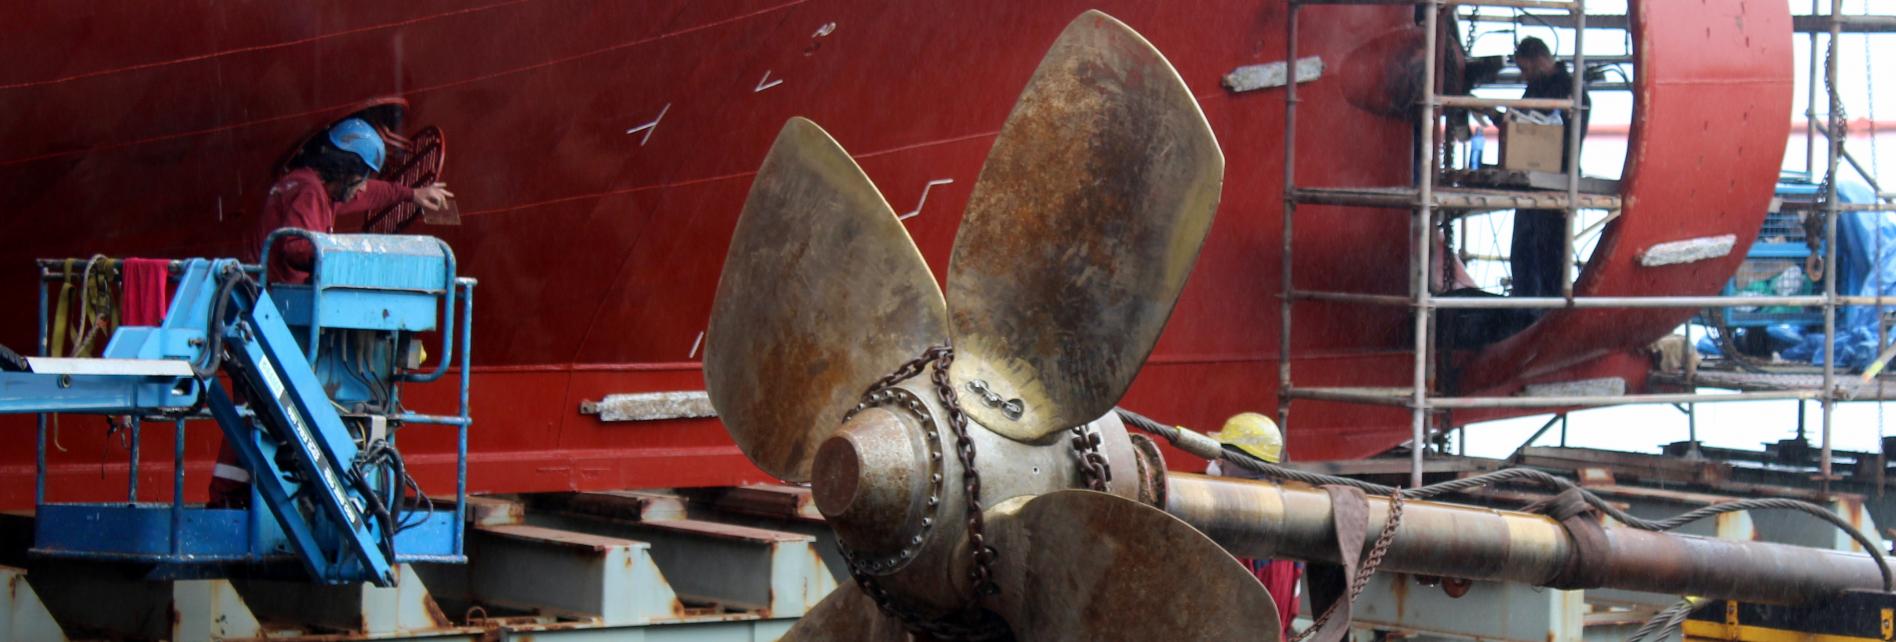 Imagen de un barco en trabajos de mantenimiento en el Puerto de Vigo